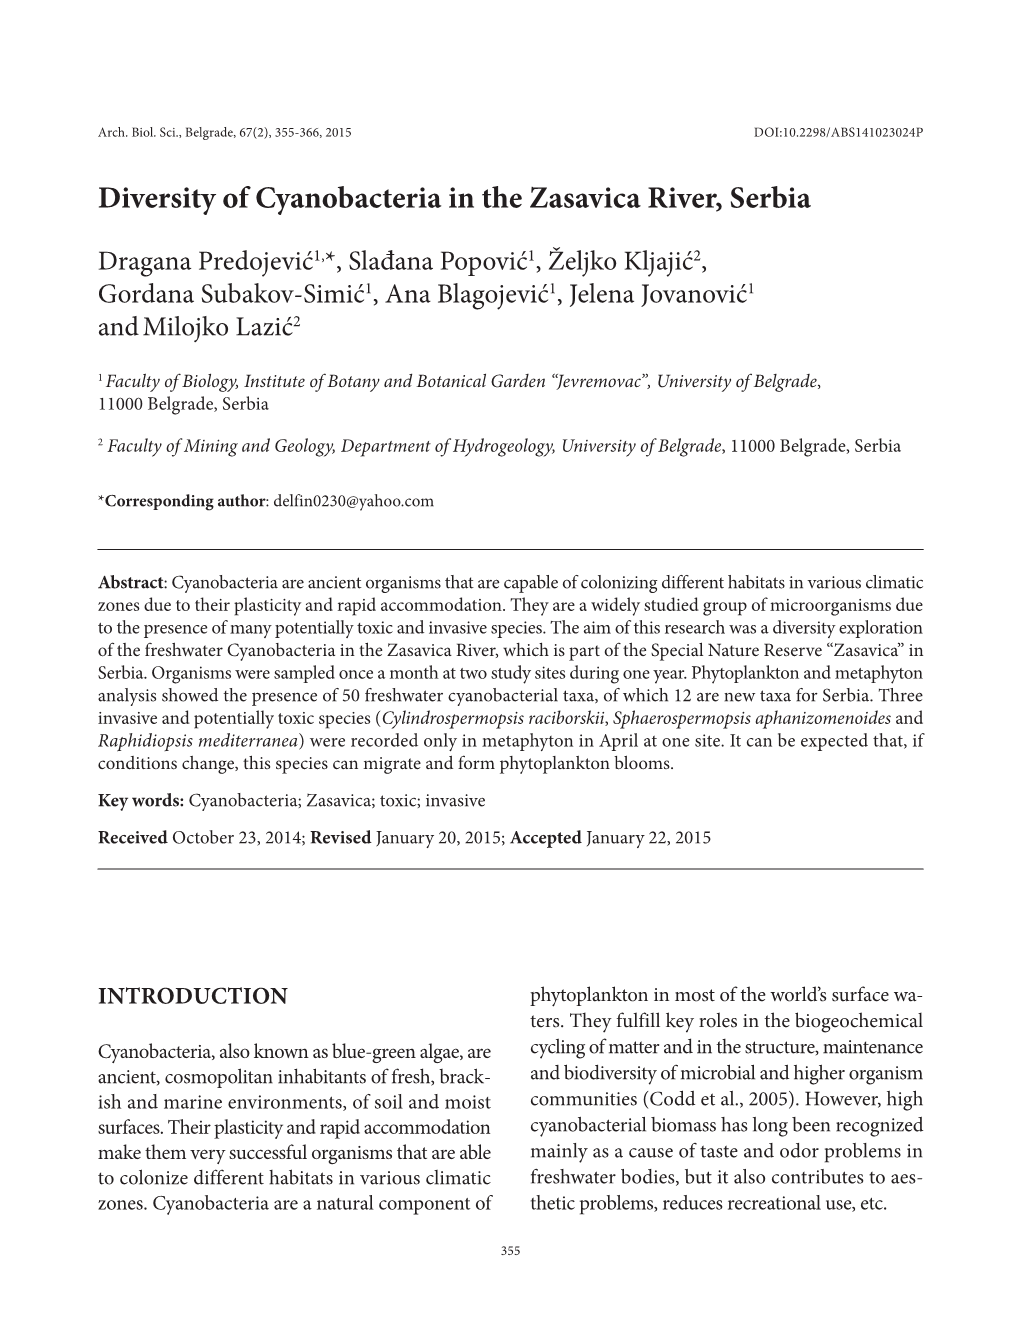 Diversity of Cyanobacteria in the Zasavica River, Serbia